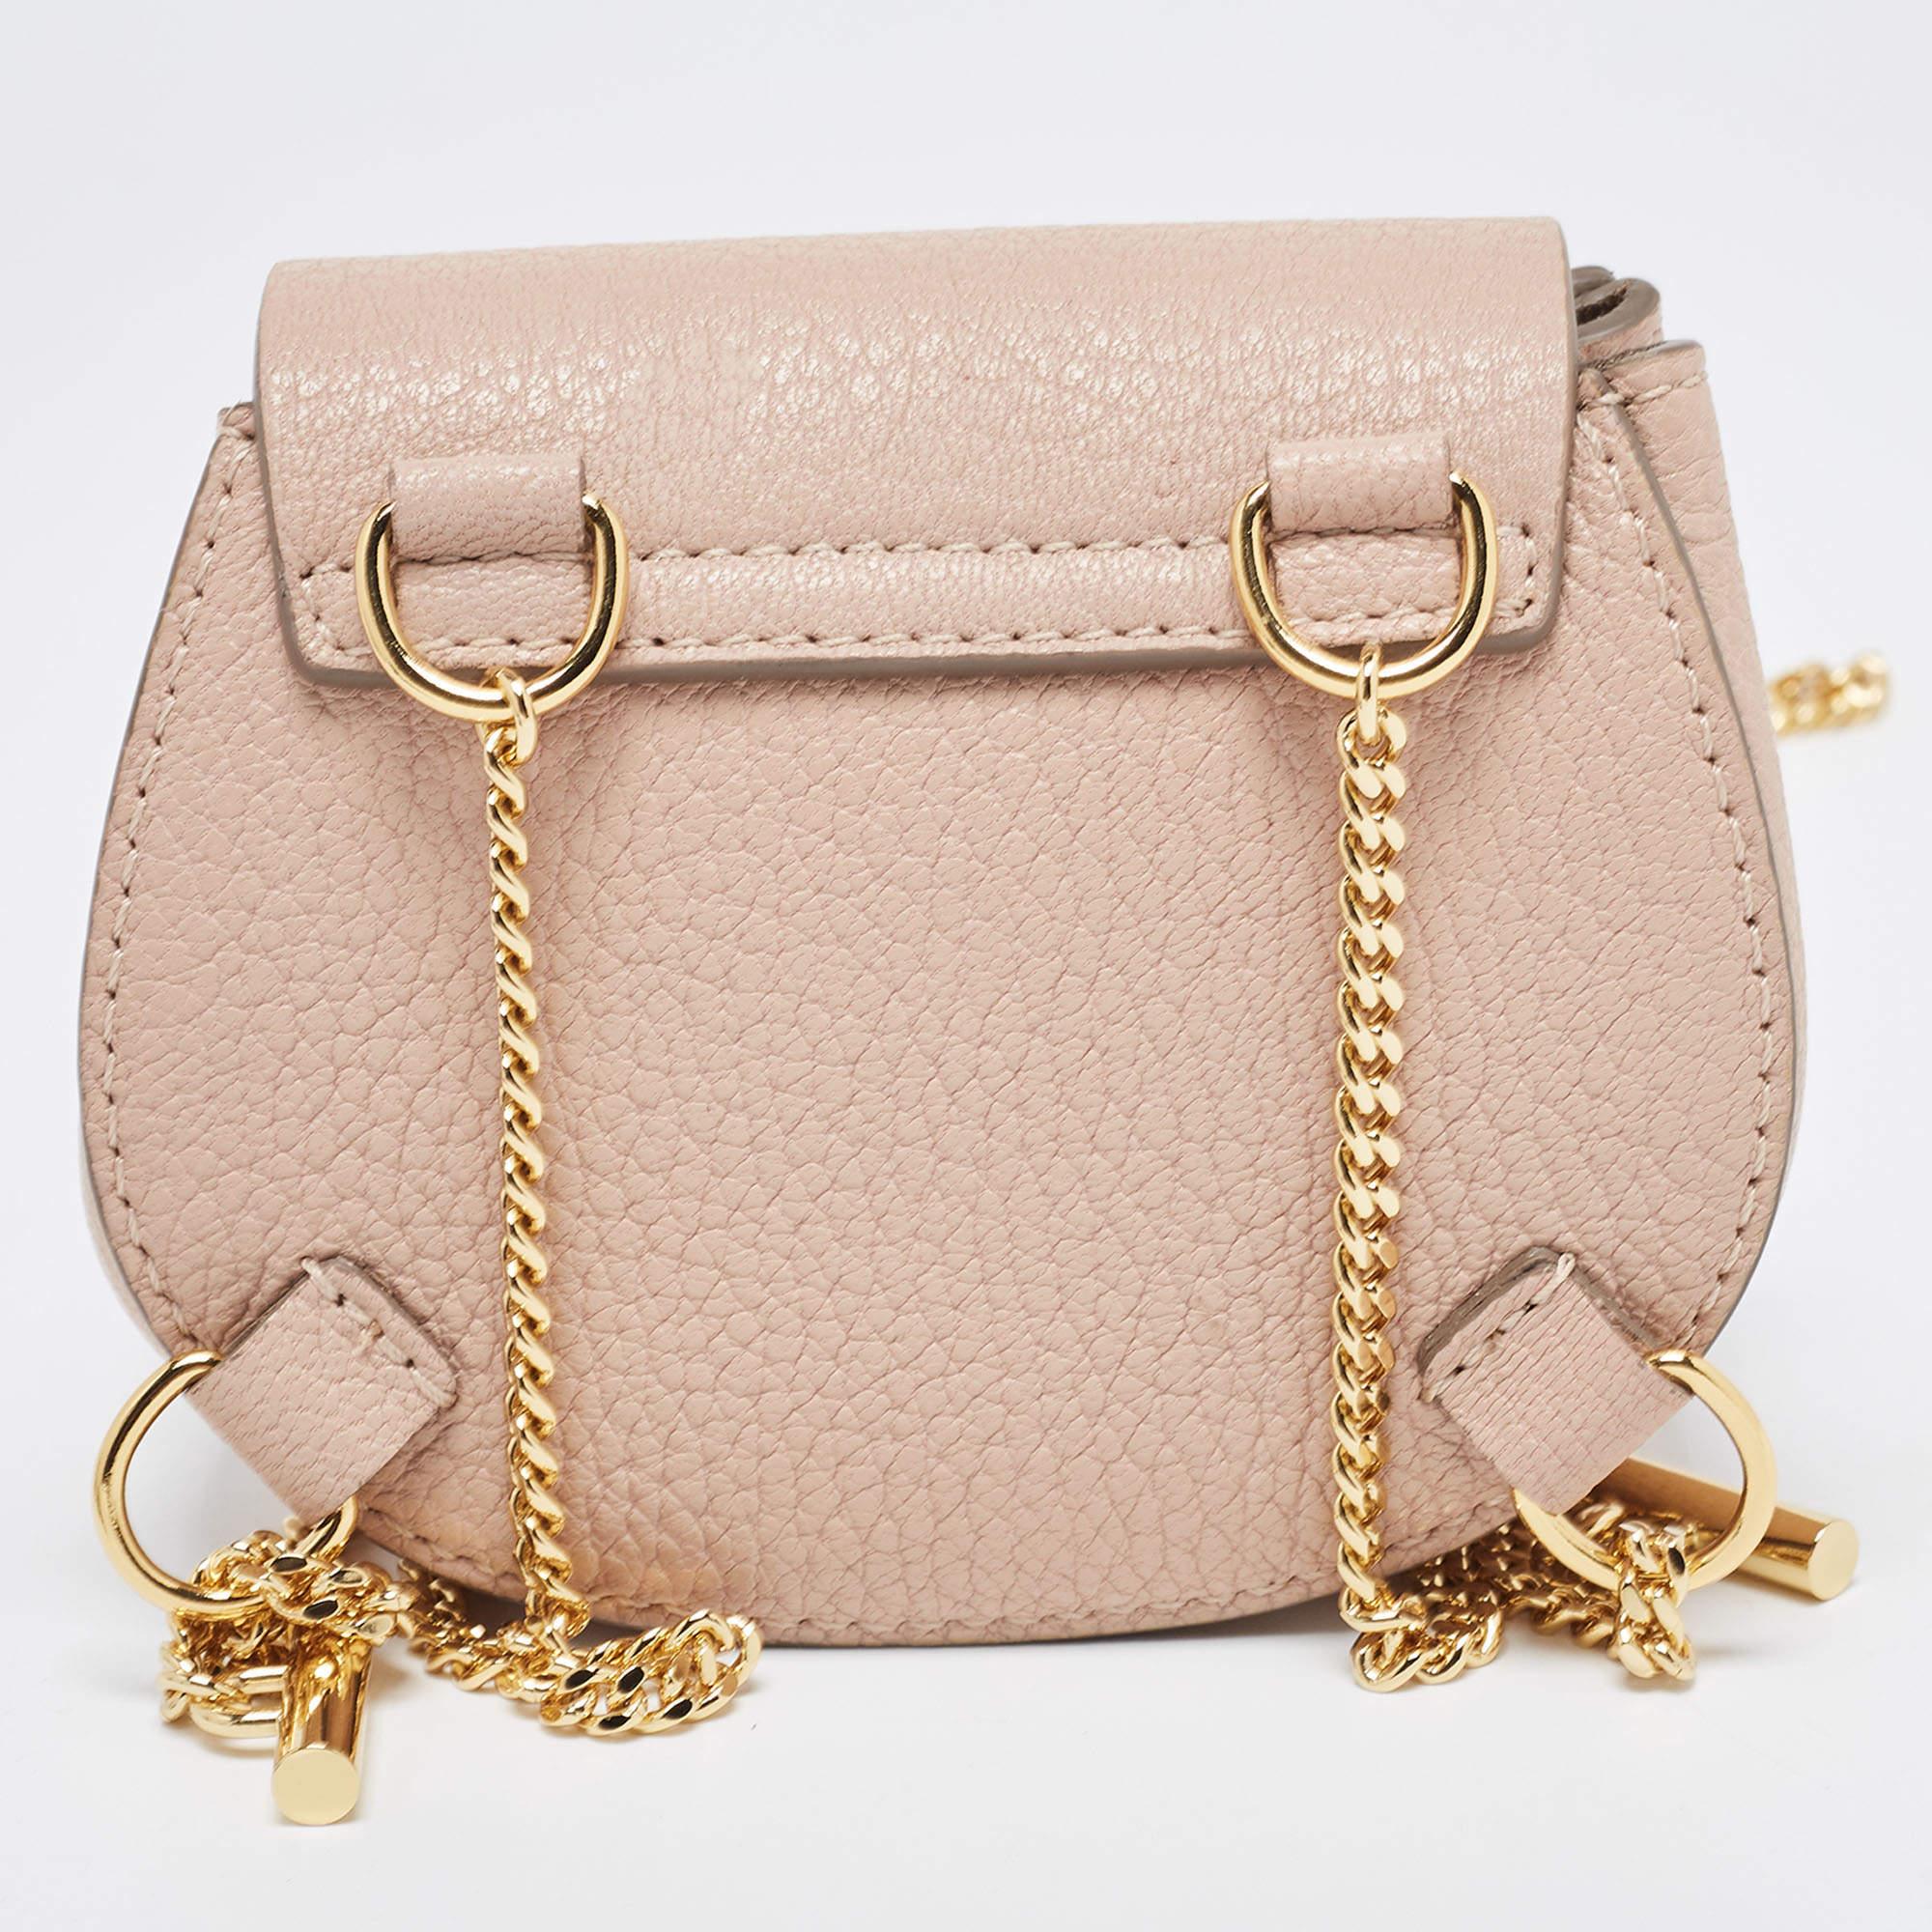 Le sac à dos Drew de Chloé est un accessoire chic et compact. Confectionné en cuir souple rose blush, il est doté d'une élégante fermeture à rabat avec un fermoir en métal doré, de bandoulières et d'une taille réduite mais fonctionnelle, idéale pour